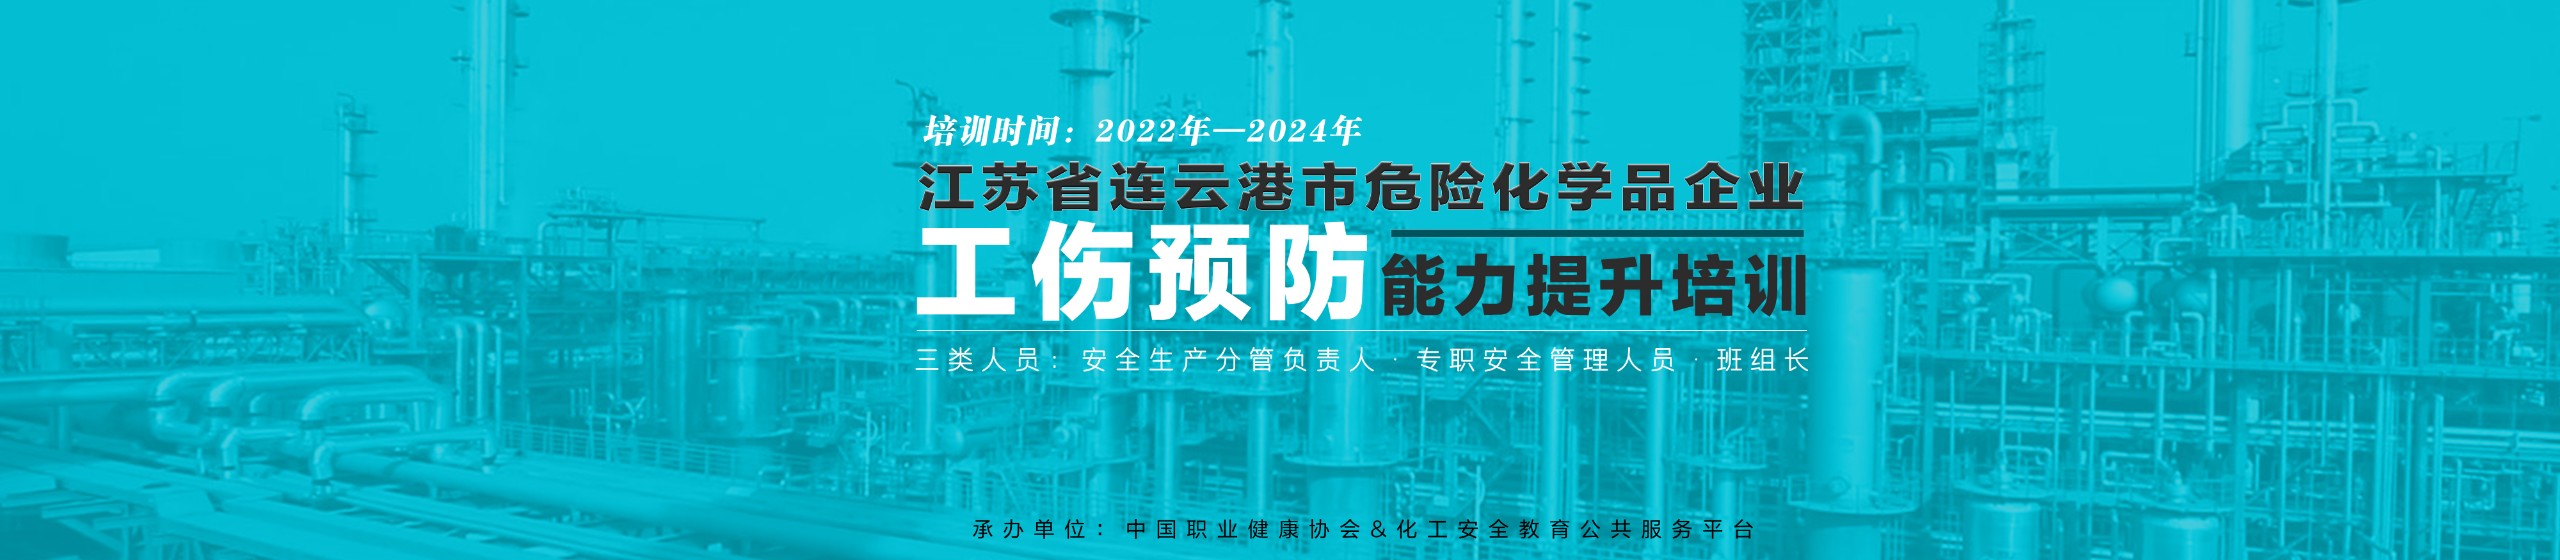 江苏省连云港市危险化学品企业工伤预防能力提升培训